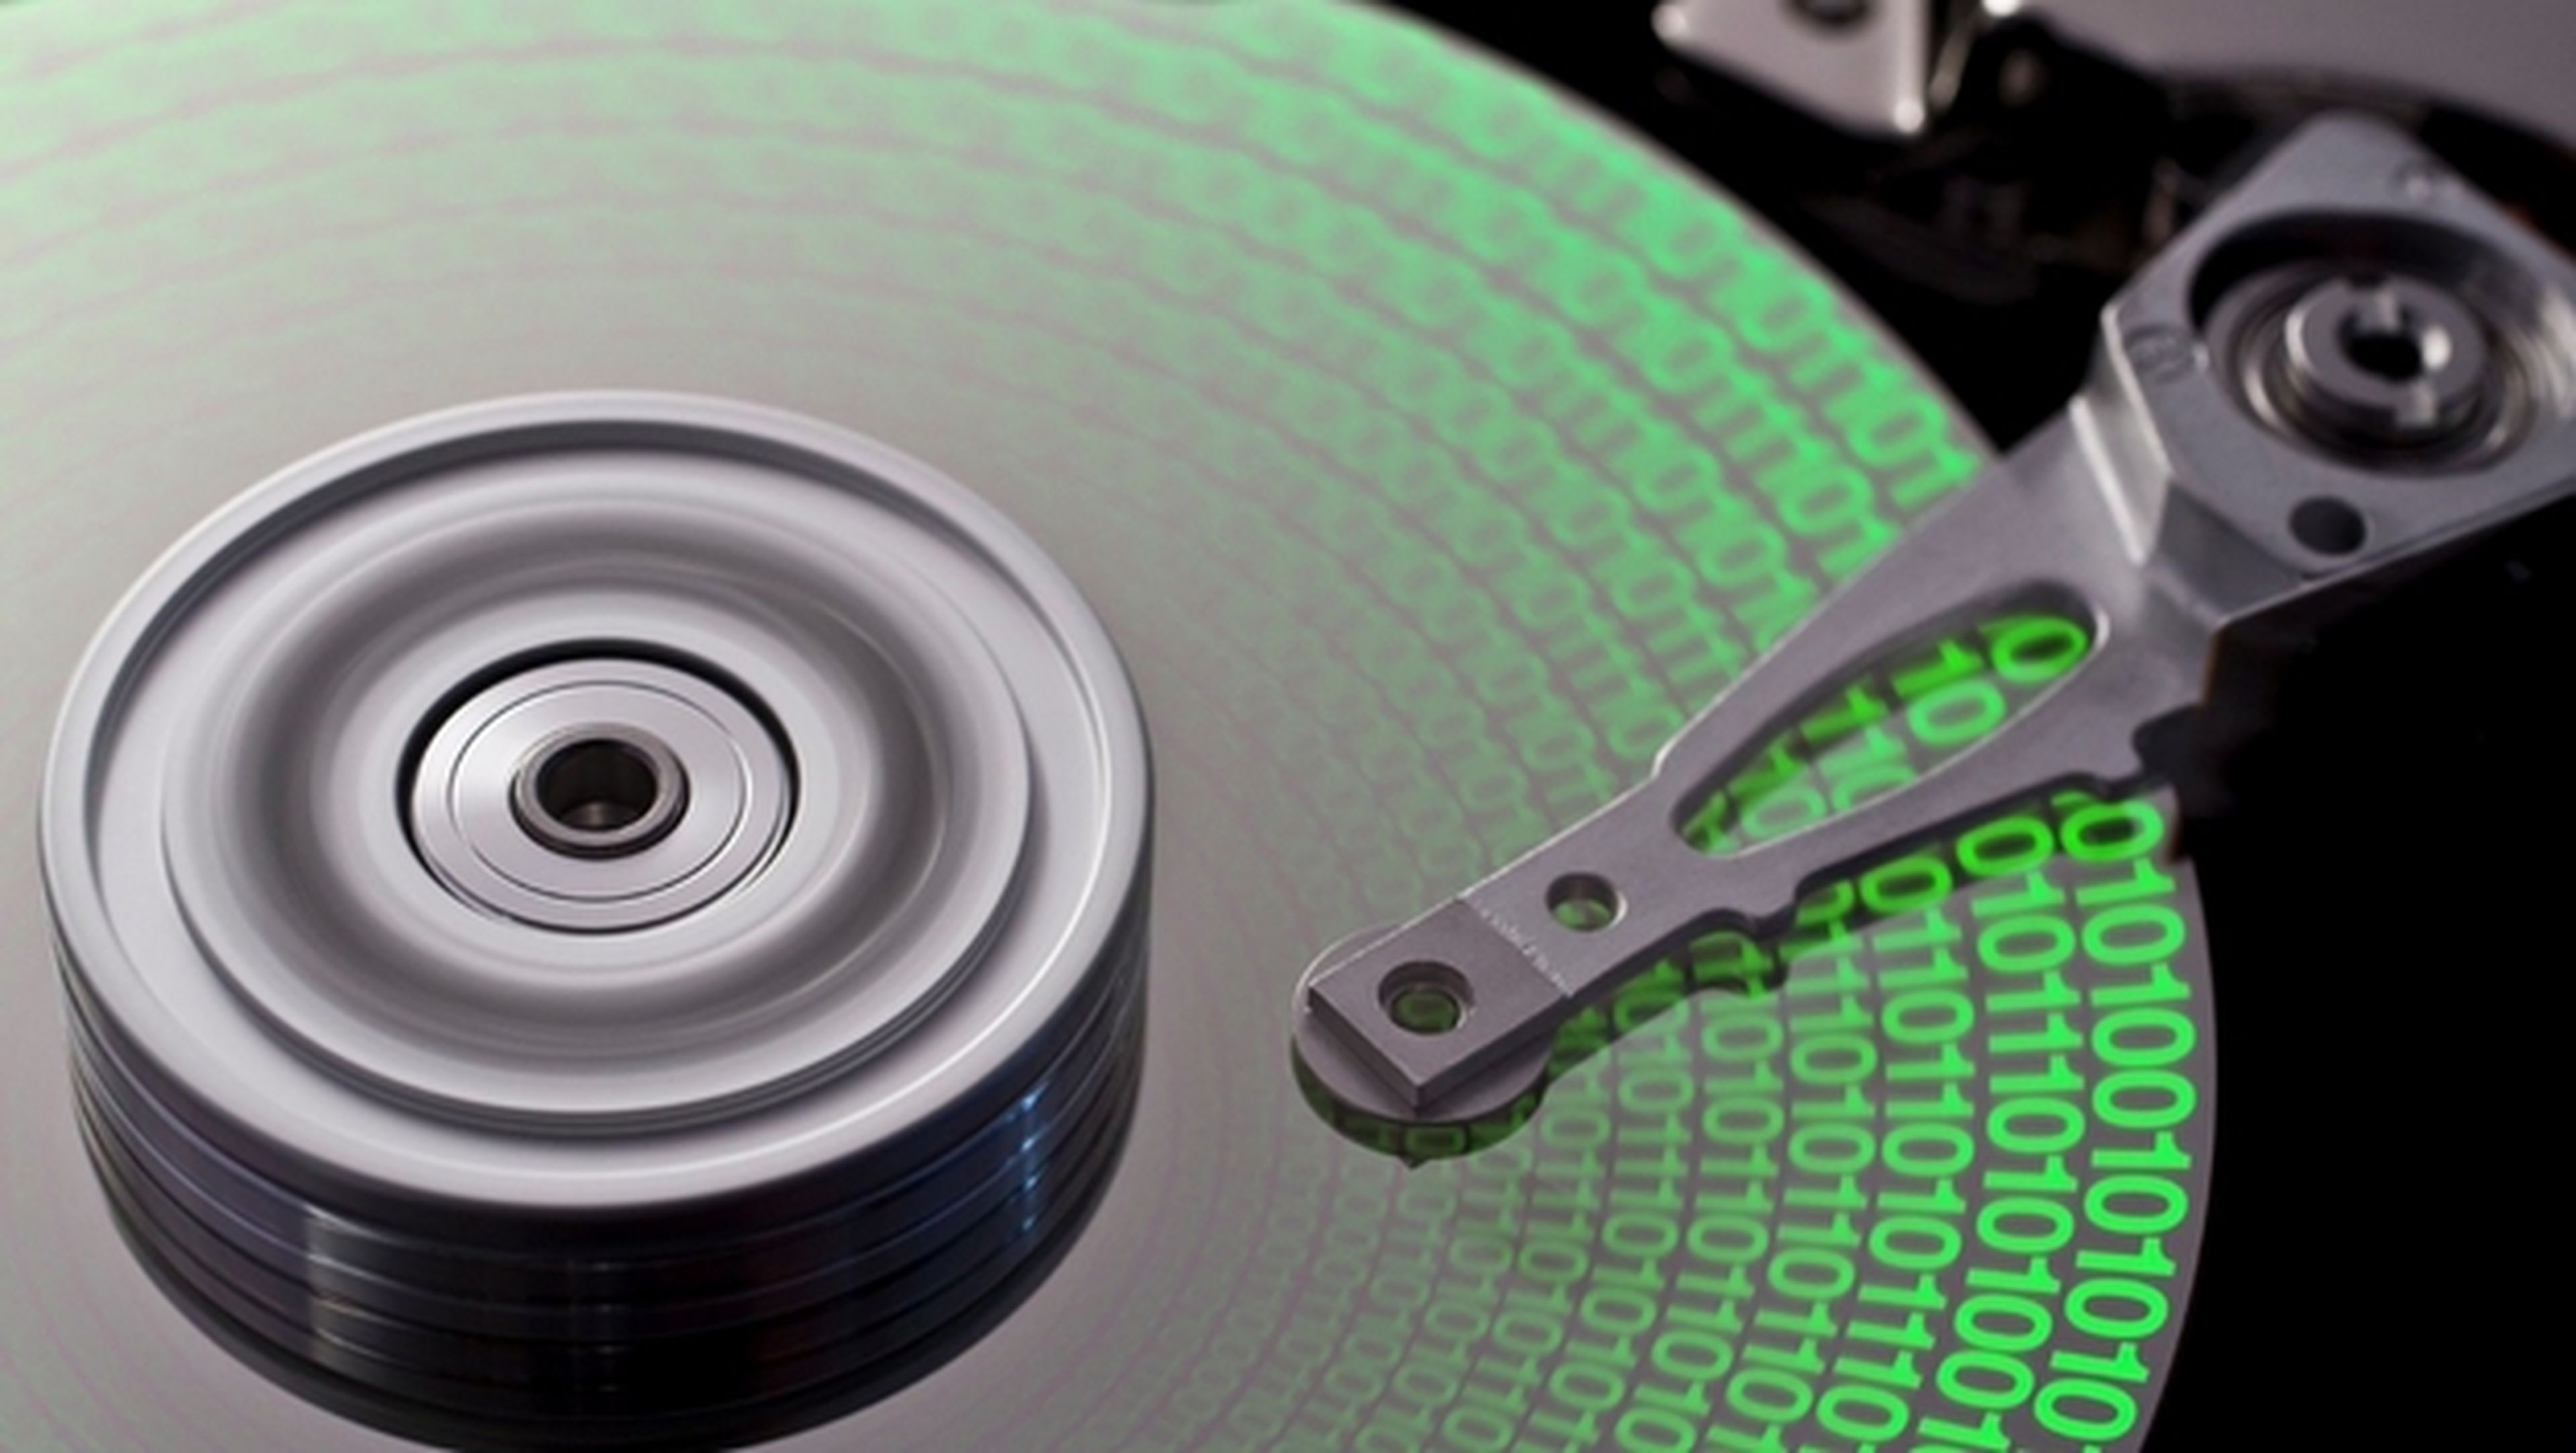 Cómo recuperar espacio en tu disco duro eliminando archivos duplicados y redundantes.